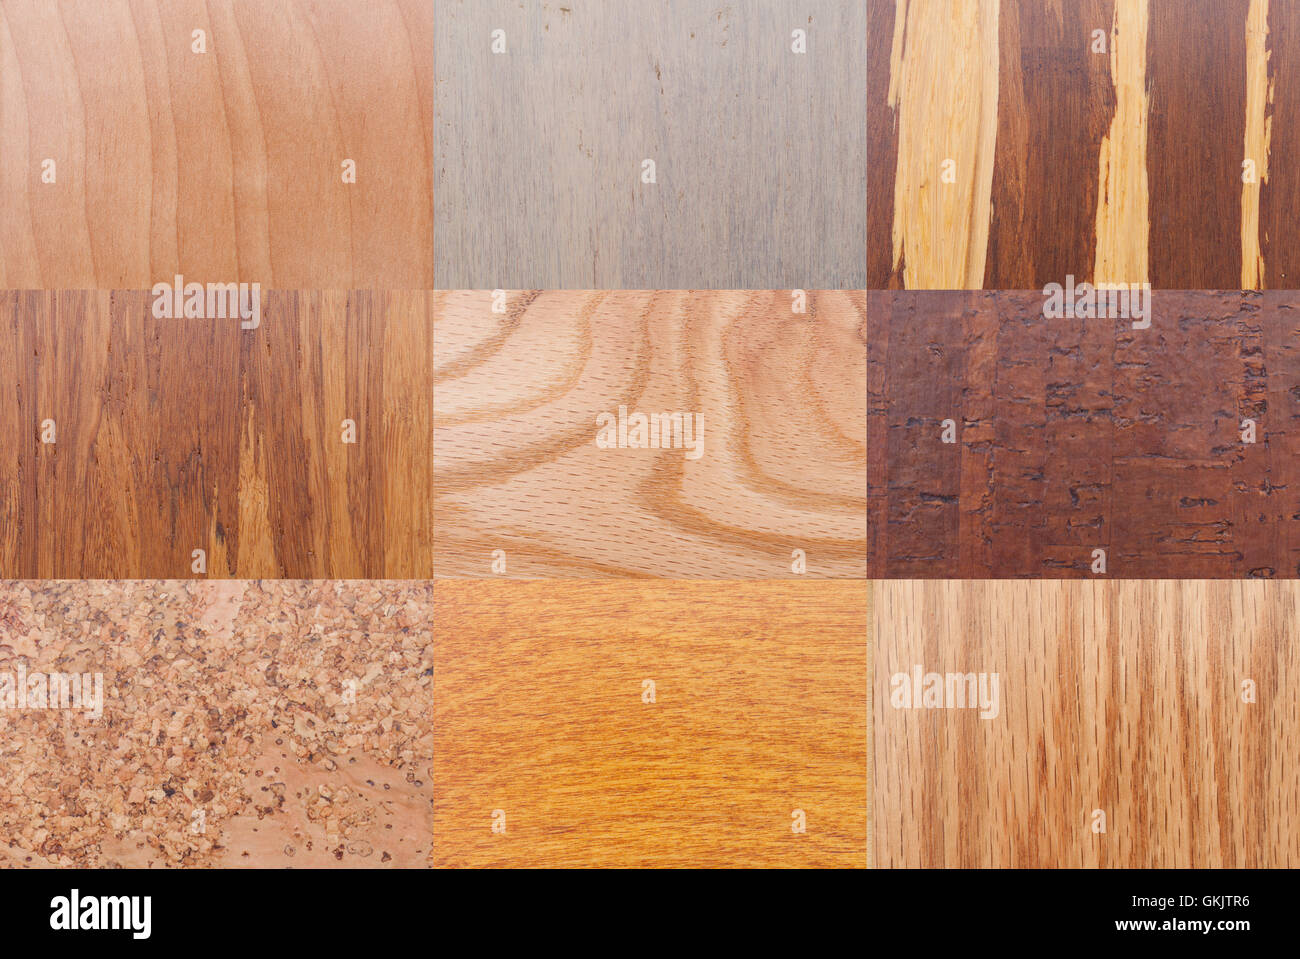 Divers modèles de grain de bois Type d'arbres et de textures. Banque D'Images